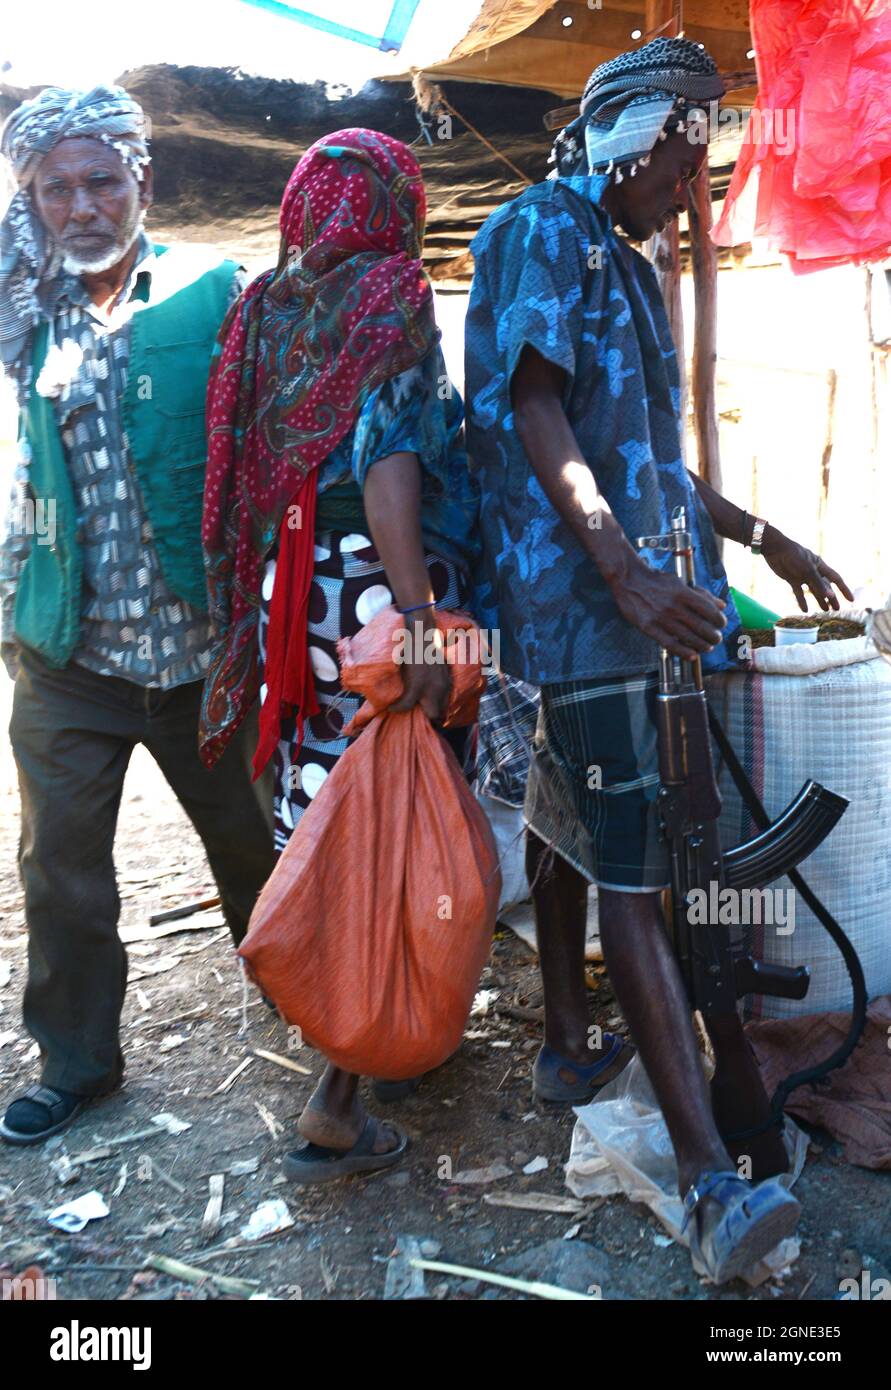 A tribesman with his Kalashnikov at the market in Bati, Ethiopia. Stock Photo